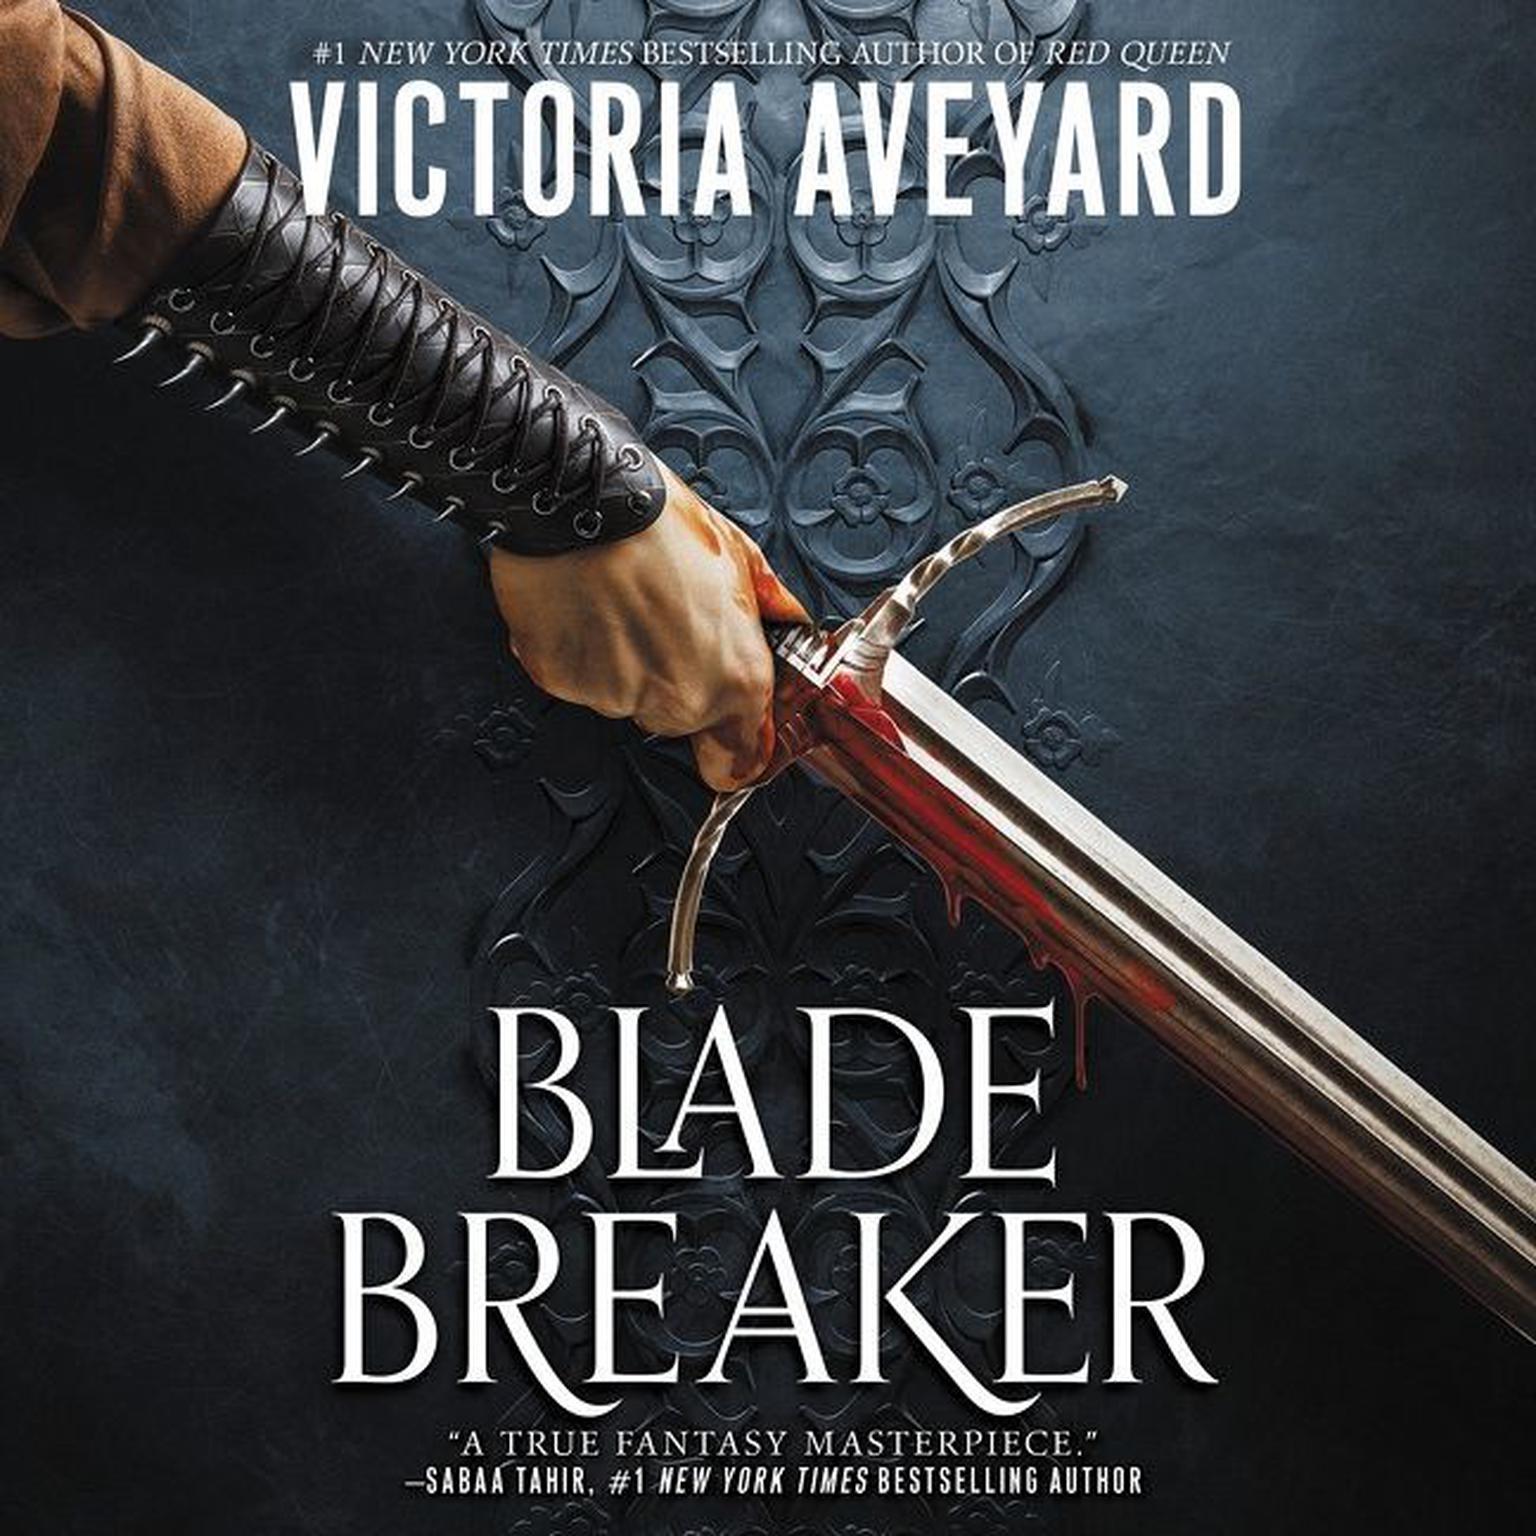 Blade Breaker Audiobook, by Victoria Aveyard